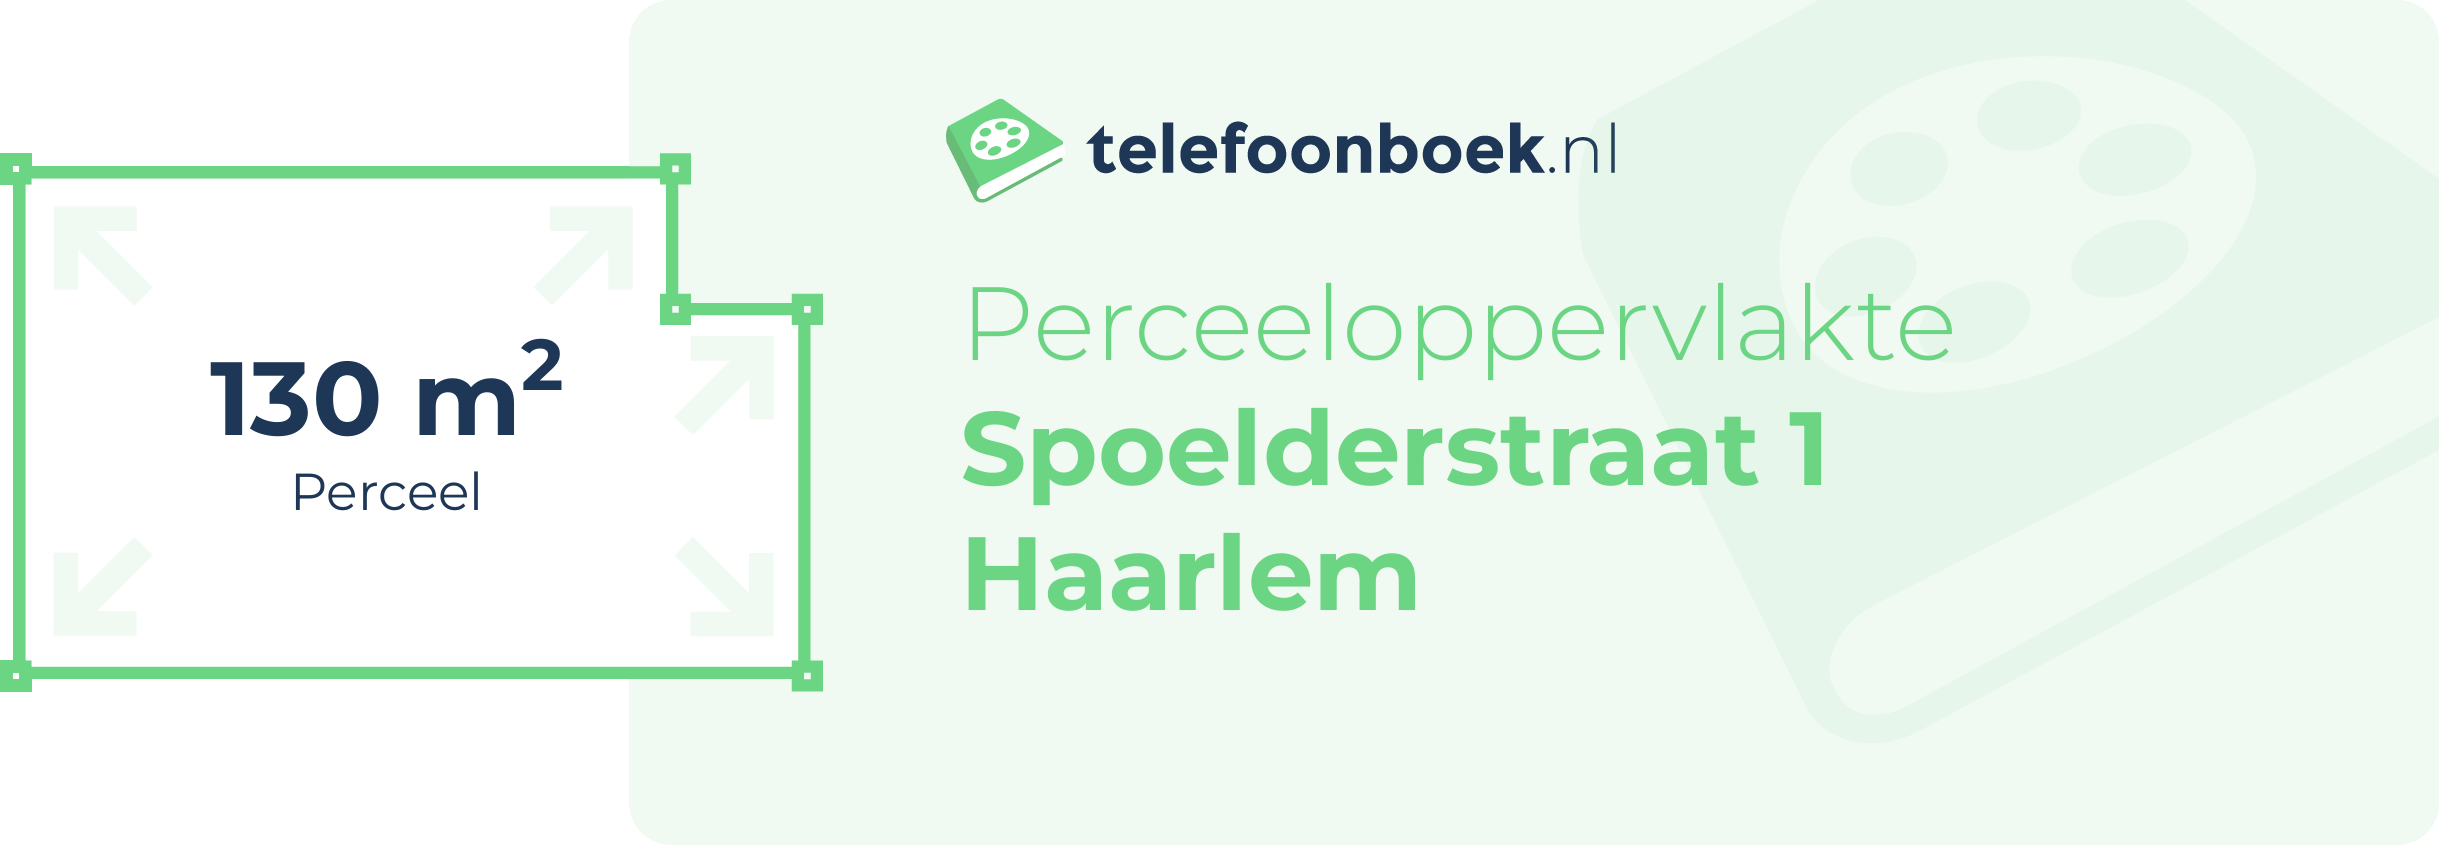 Perceeloppervlakte Spoelderstraat 1 Haarlem